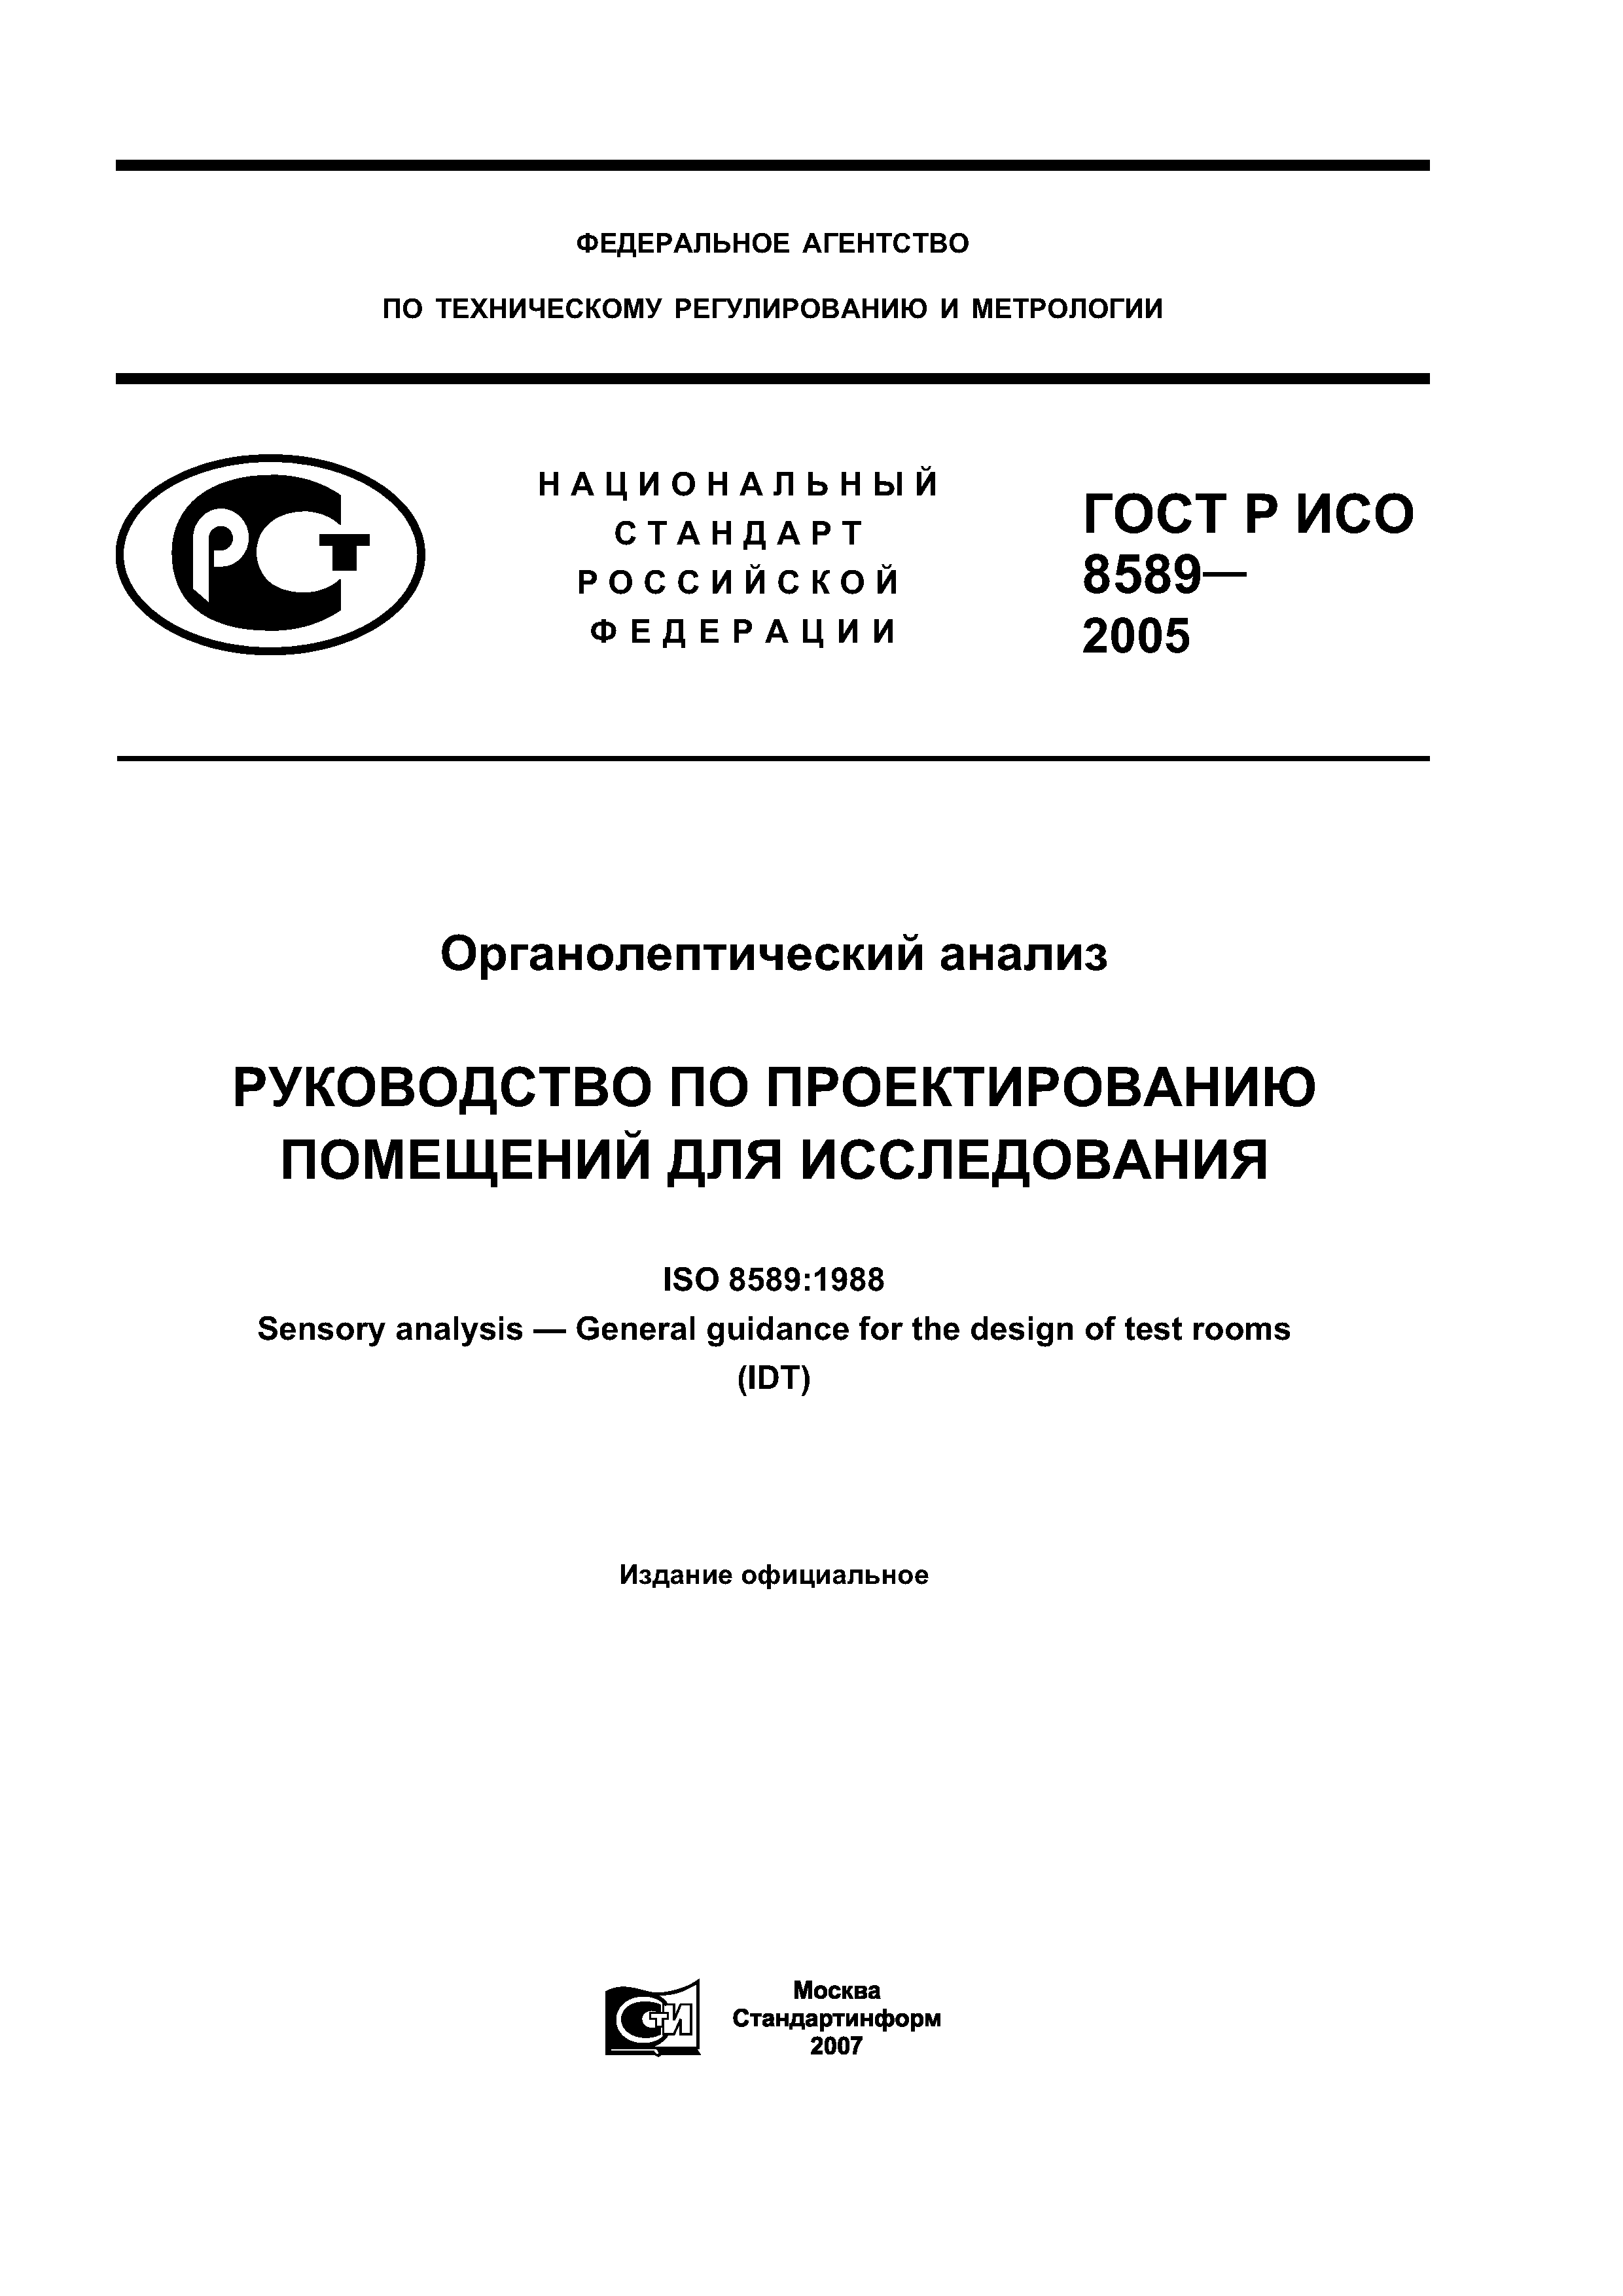 ГОСТ Р ИСО 8589-2005